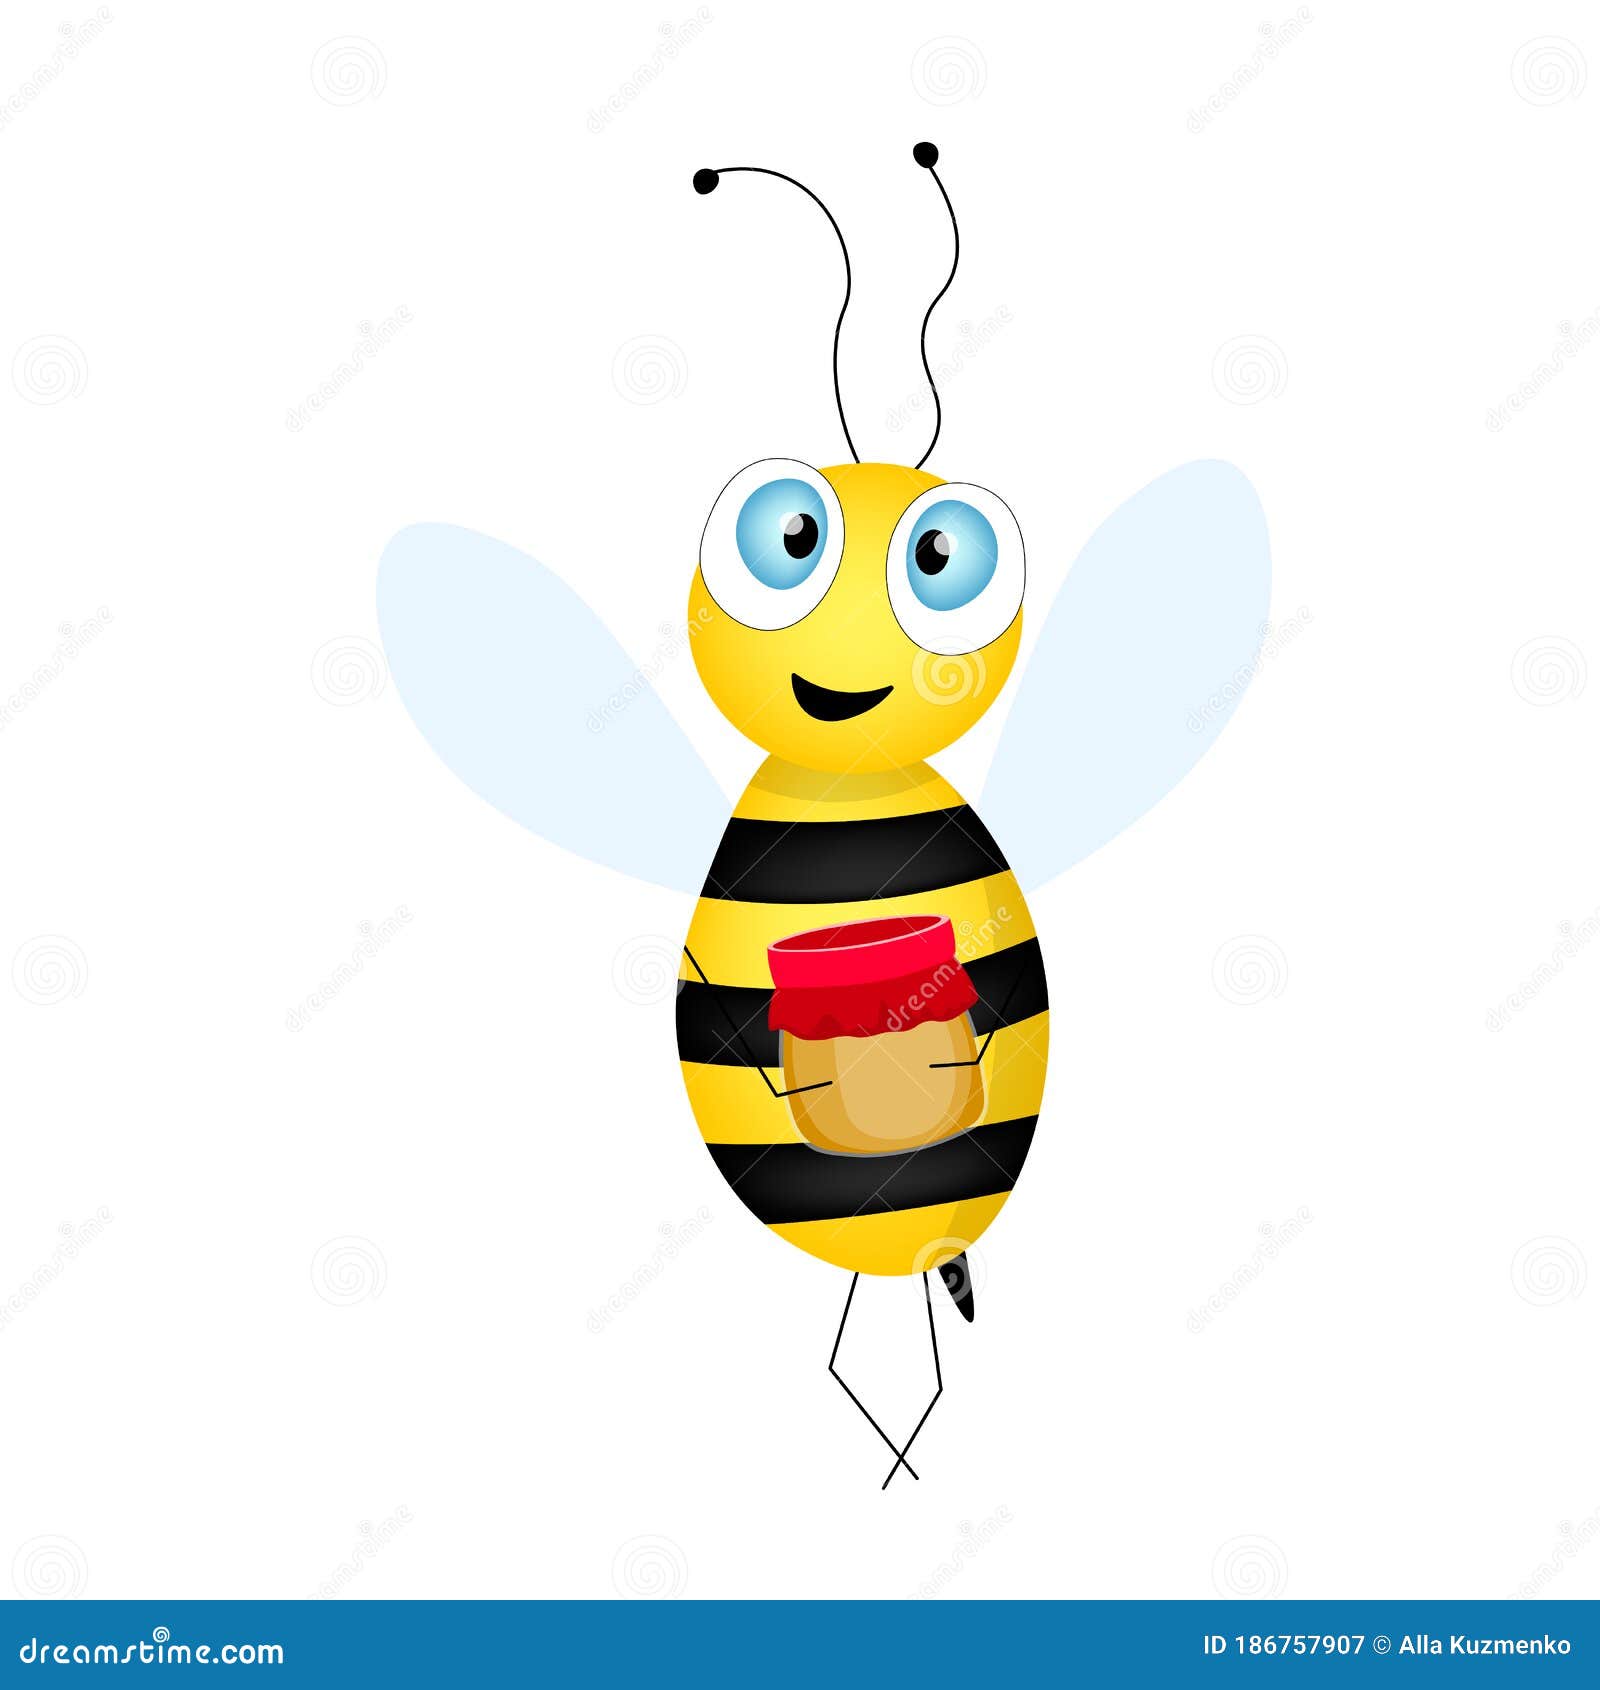 Ambiente diseño de abejas Servilletas de papel 20 unidades, 16,5 x 16,5 cm 